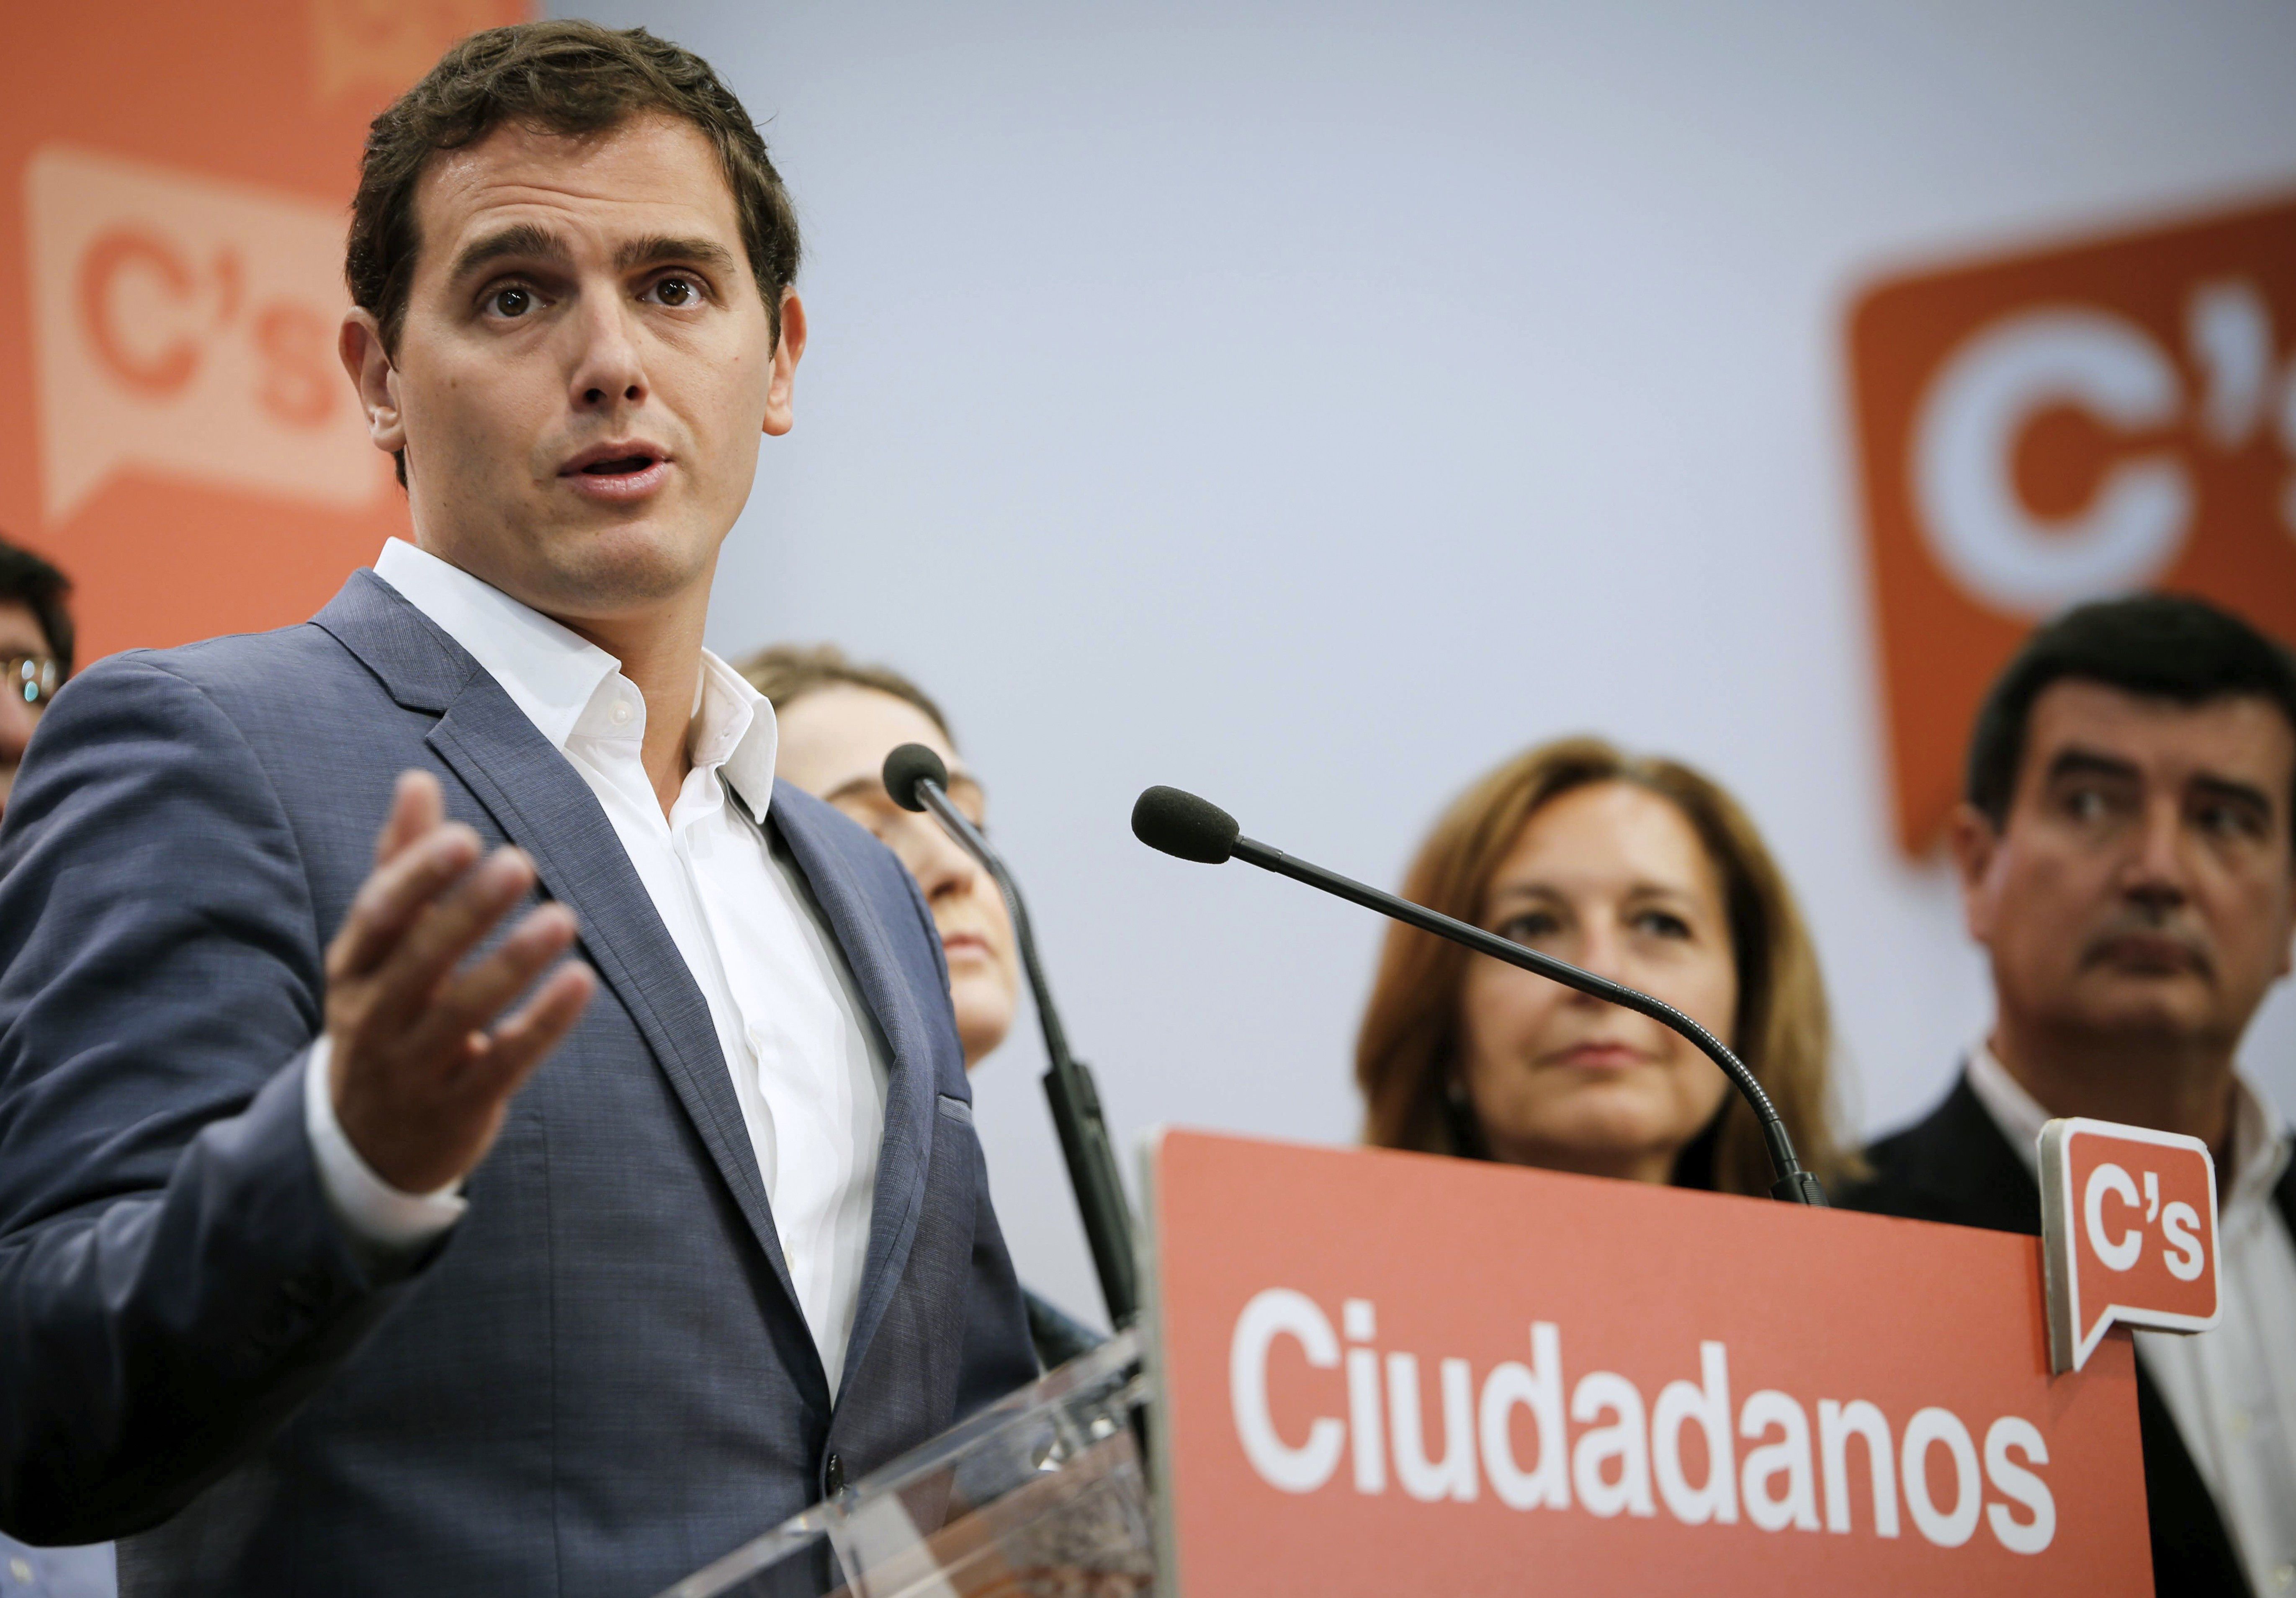 El PP tienta a C's con presidir el Congreso a cambio del 'sí' a Rajoy